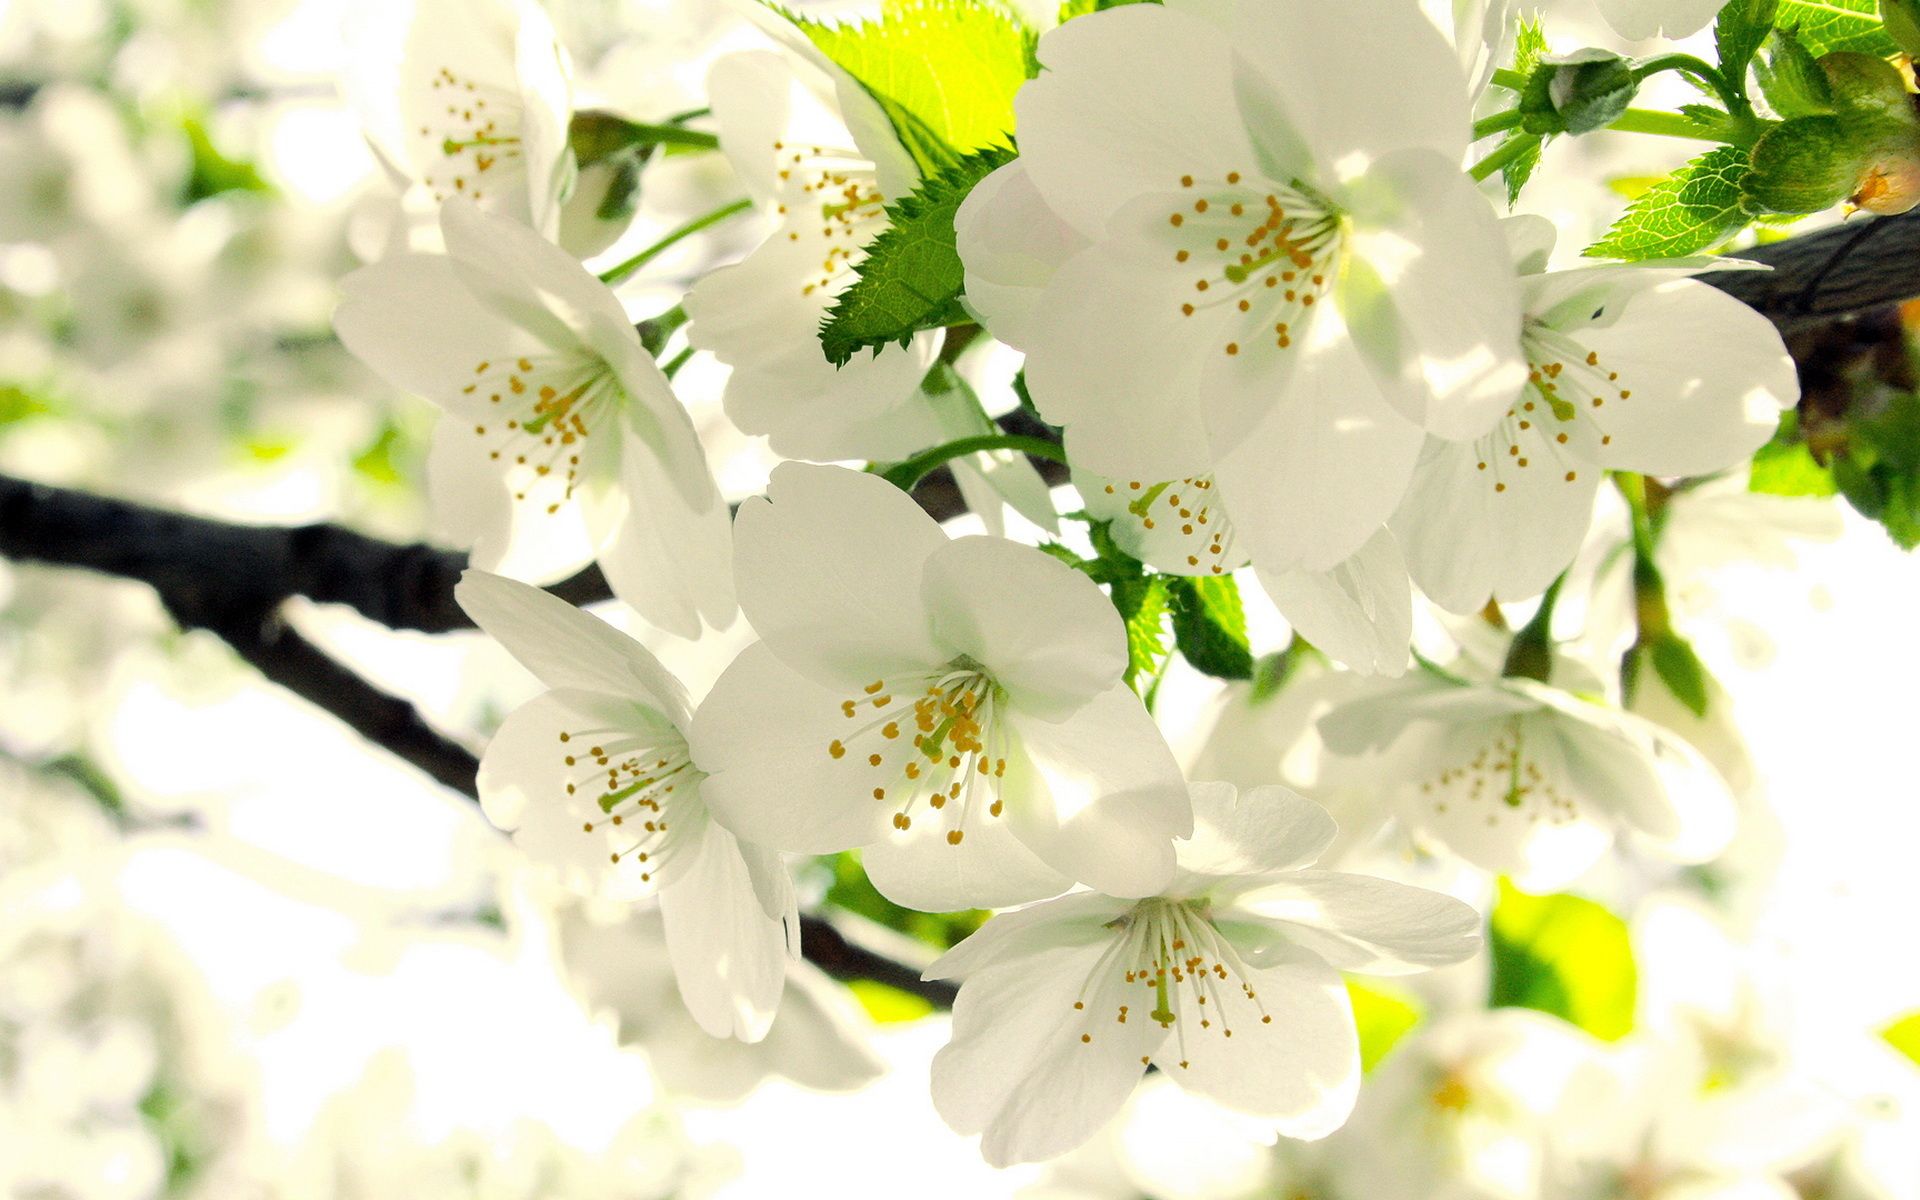 تصویری زیبنده از شکوفه های پر شگفت سیب برای استوری 